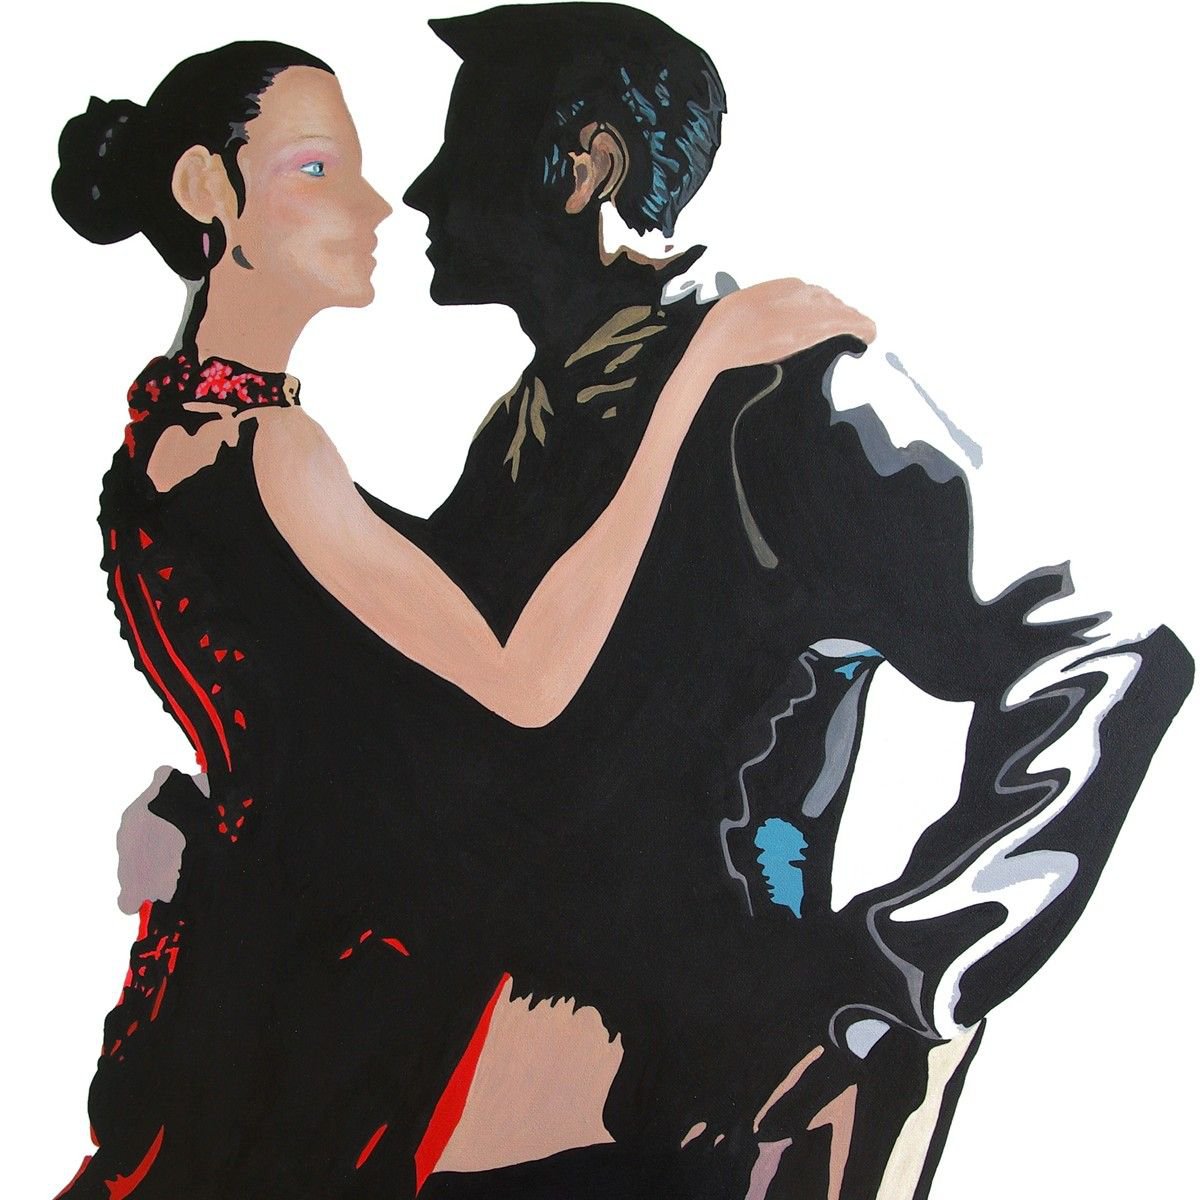 Tango dancers, modern ballroom dance couple by oconnart